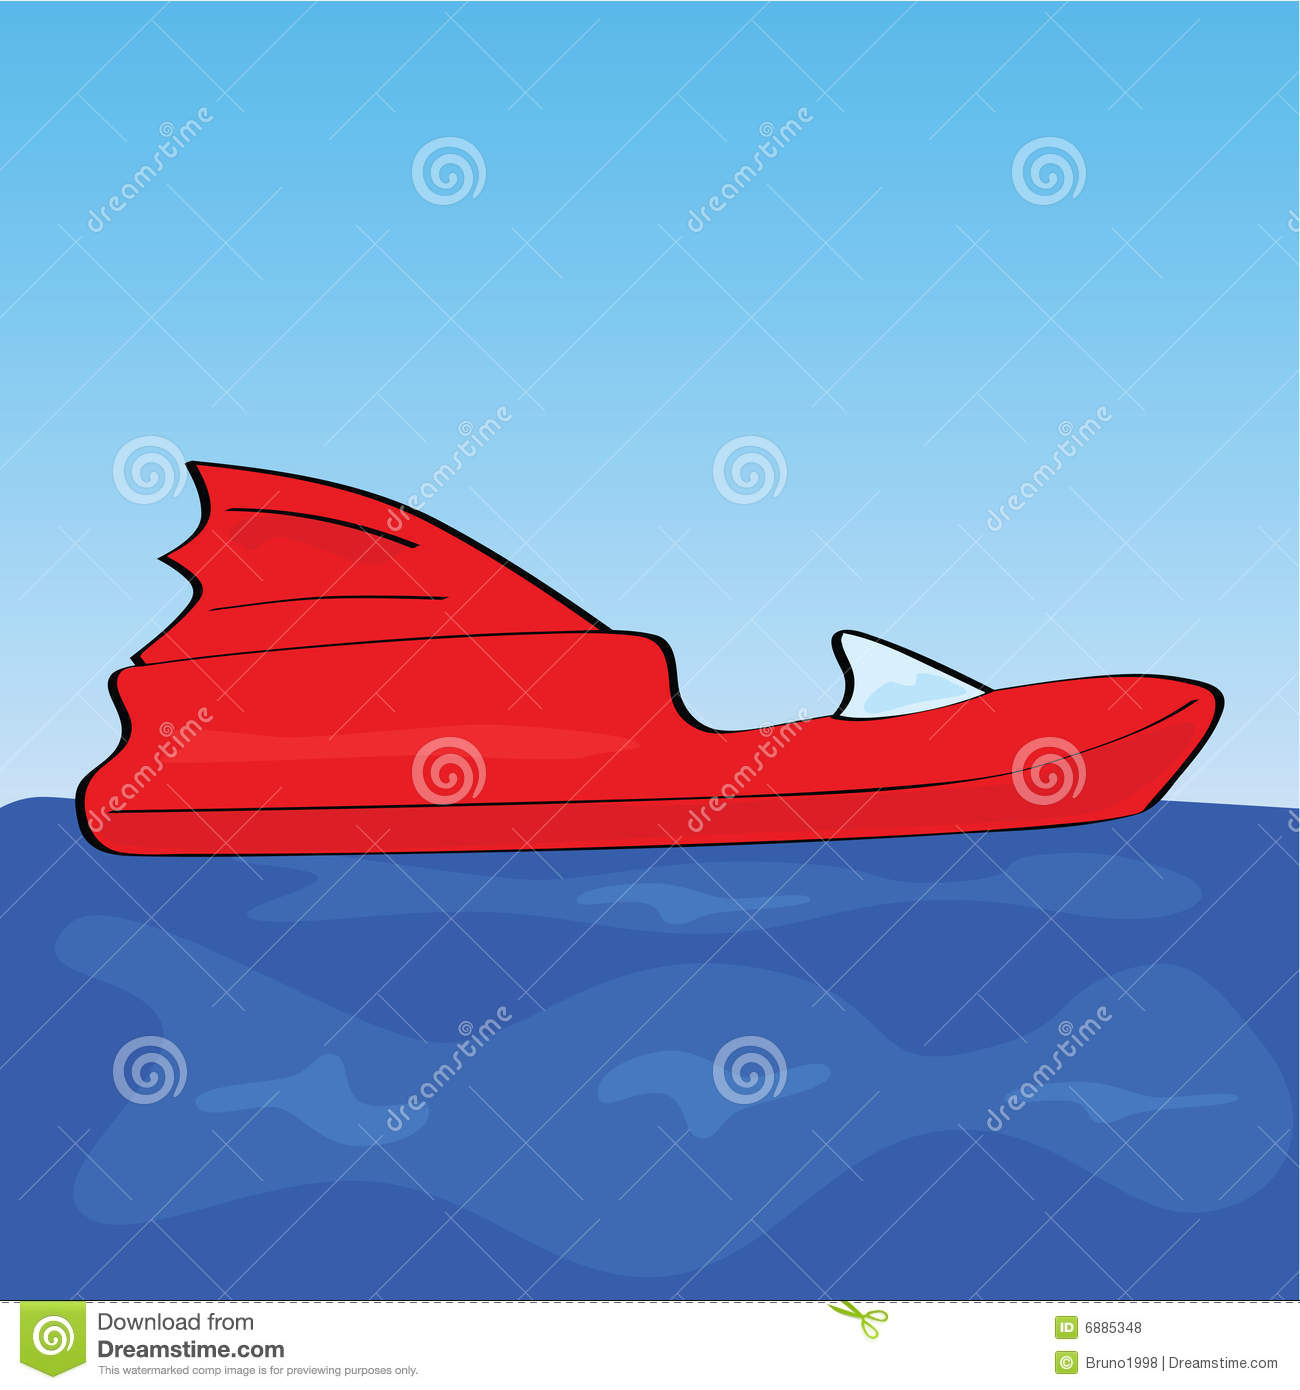 Cartoon Speed Boat Royalty Free Stock Photos   Image  6885348